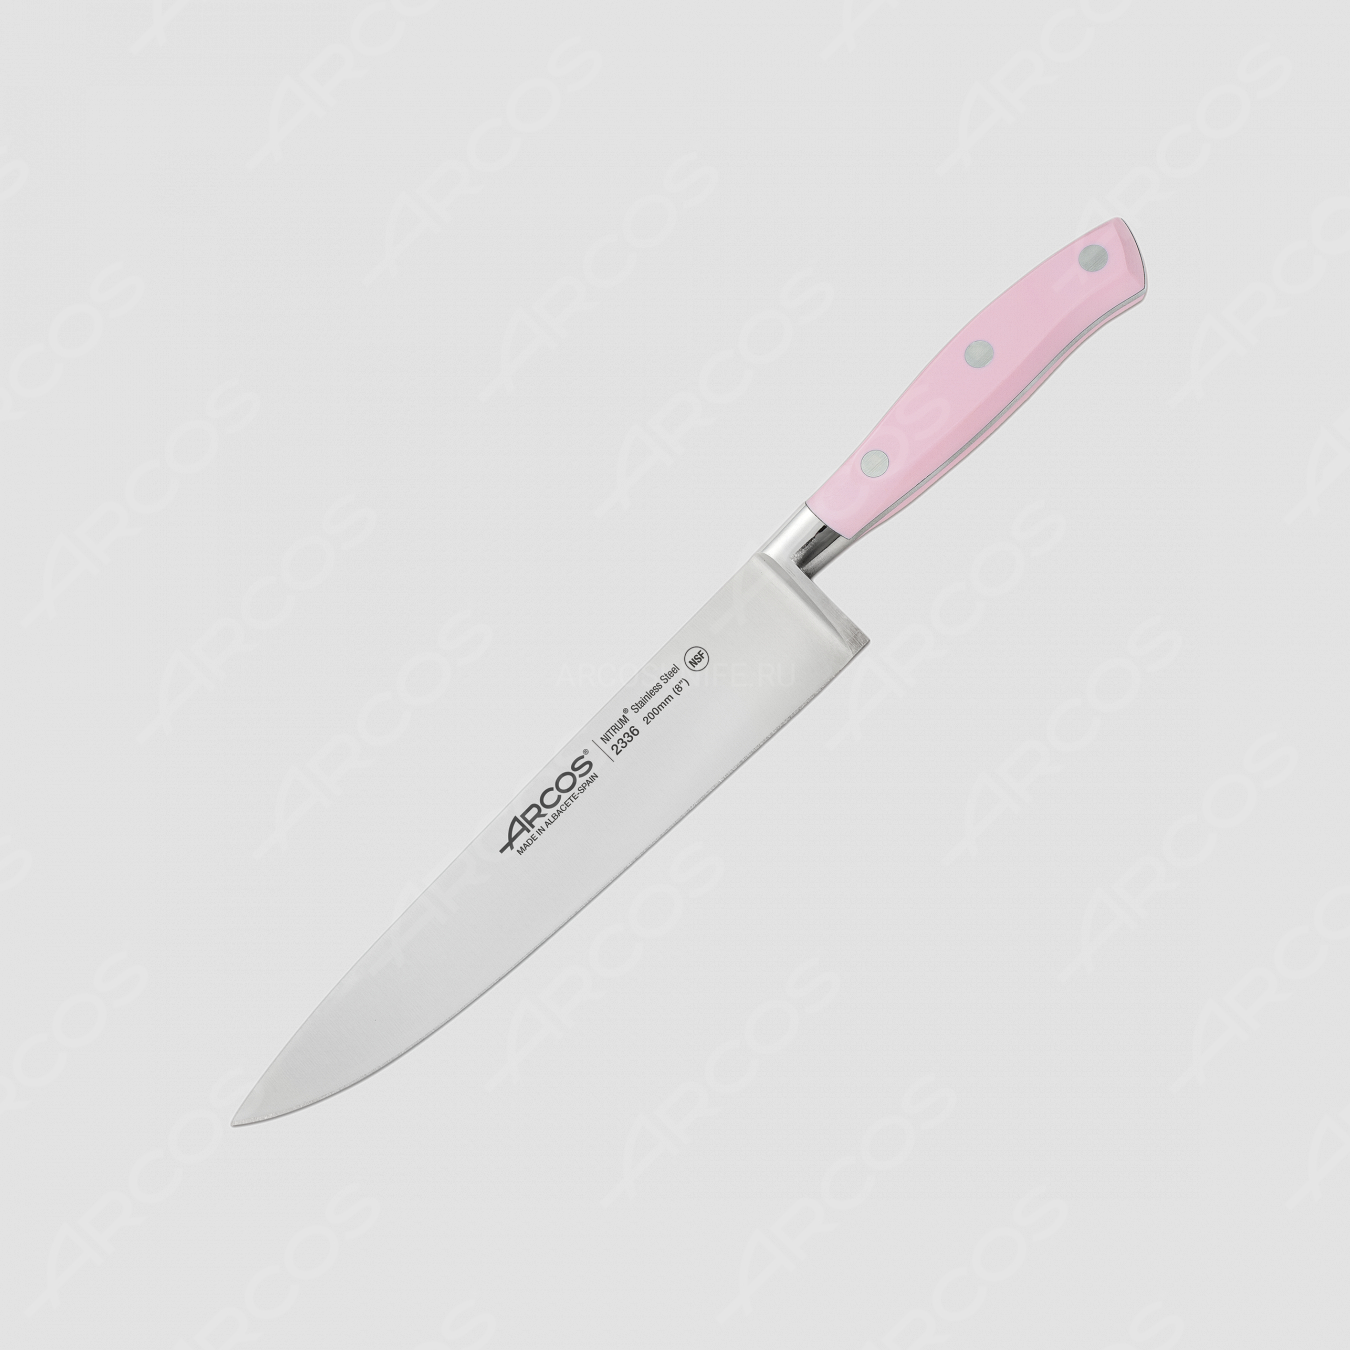 Профессиональный поварской кухонный нож «Шеф» 20 см, серия Riviera Rose, ARCOS, Испания